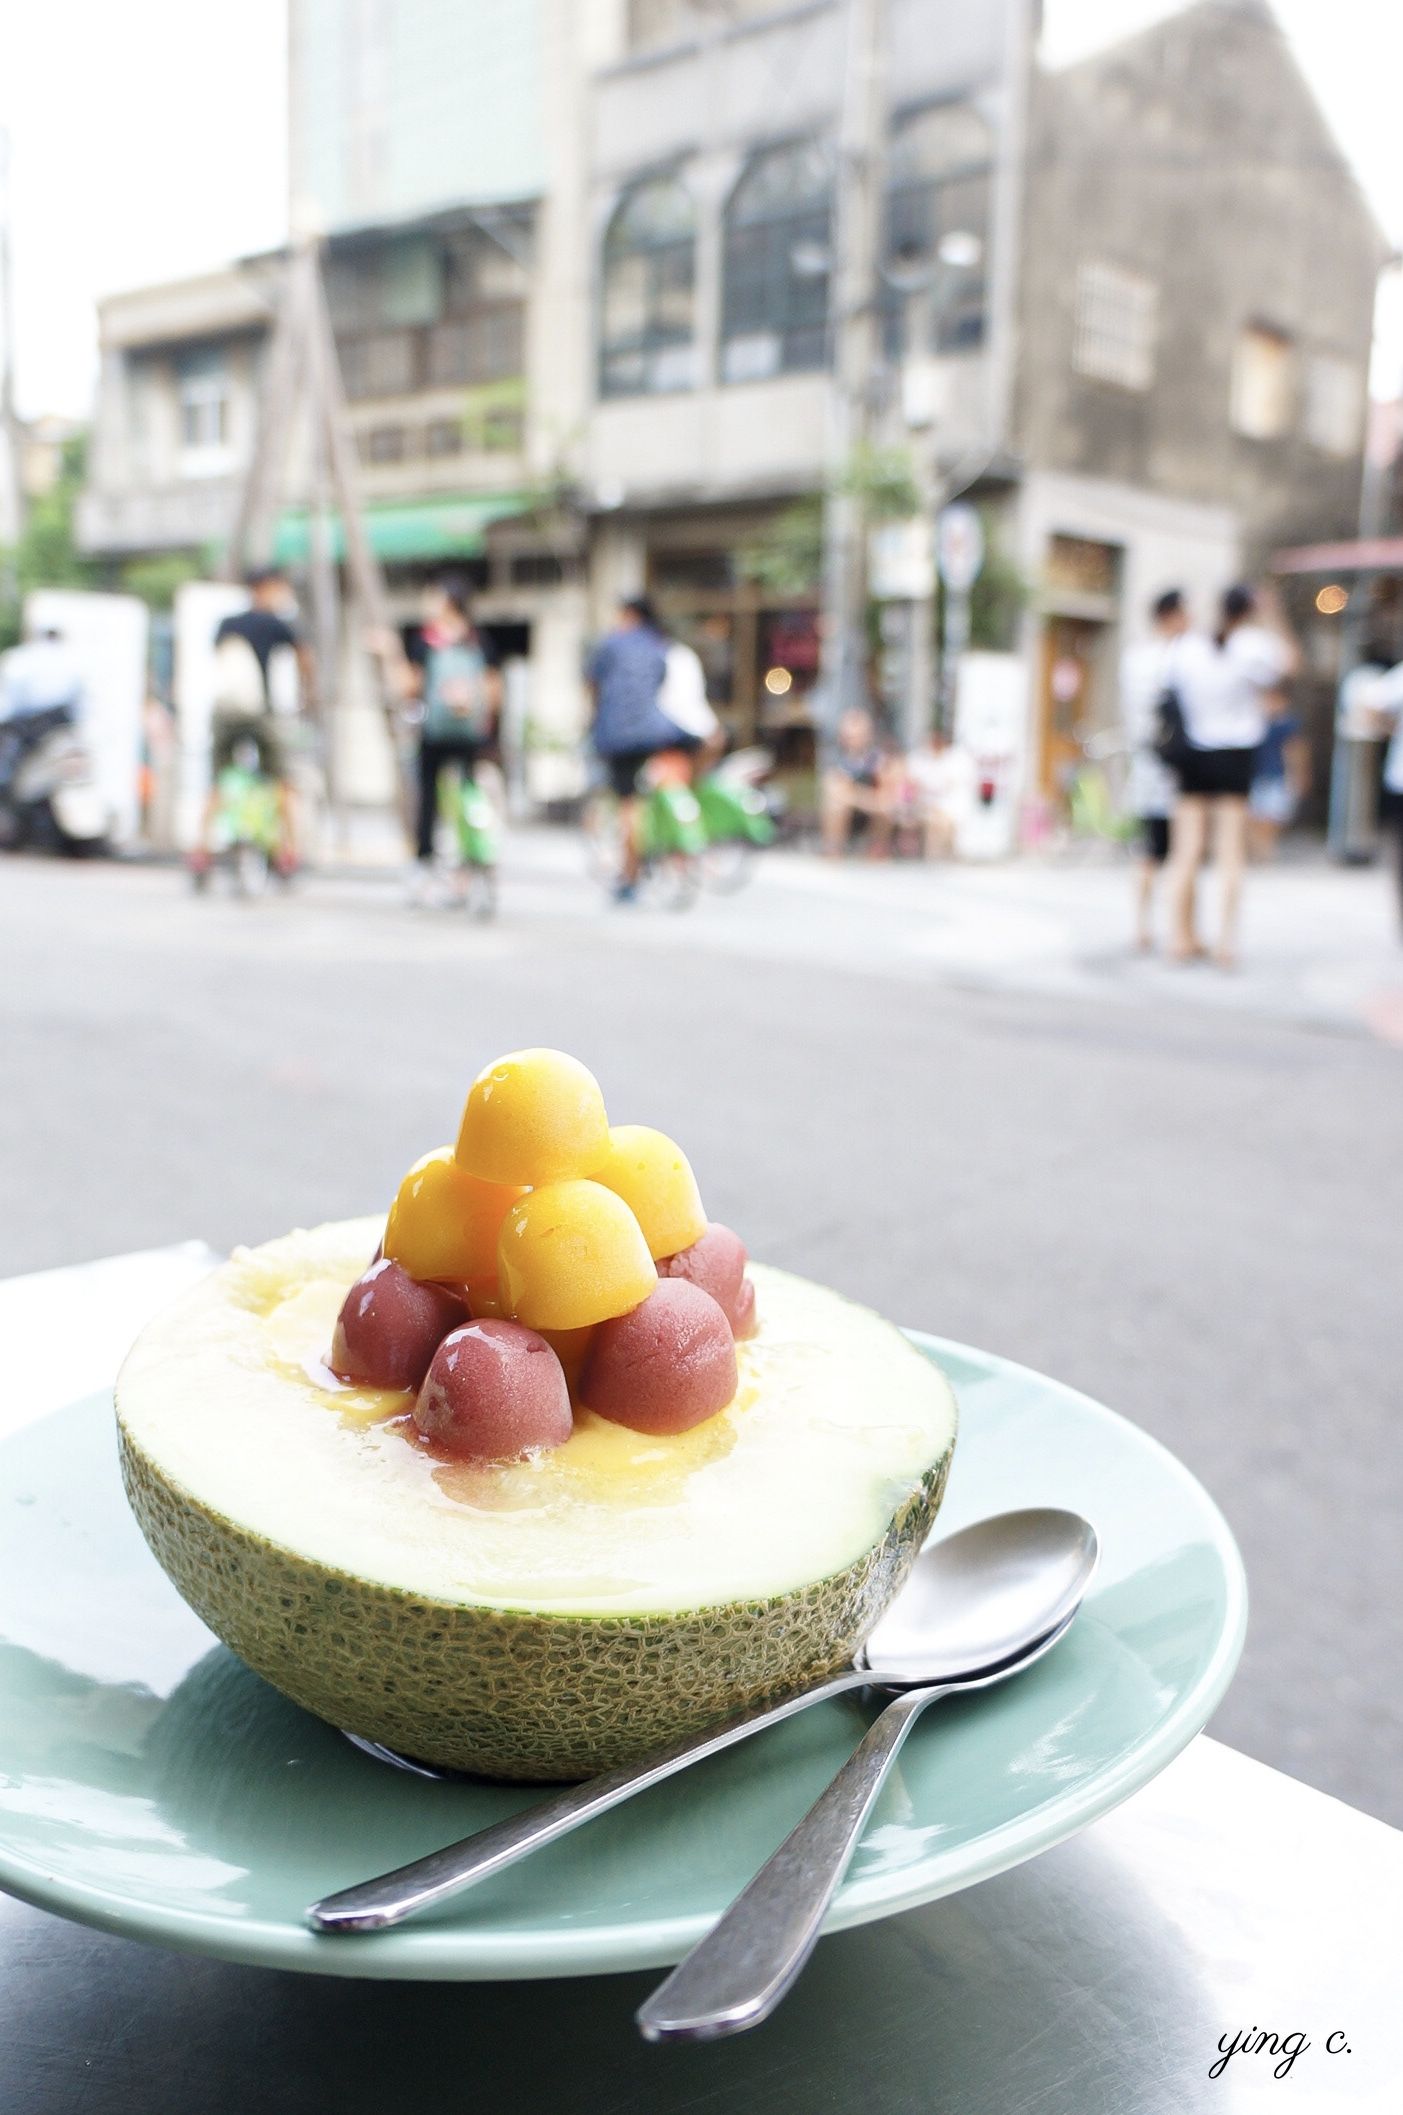 在台灣，餐後以水果代替甜點更為普遍。照片中是台南泰成水果店的招牌哈密瓜冰。